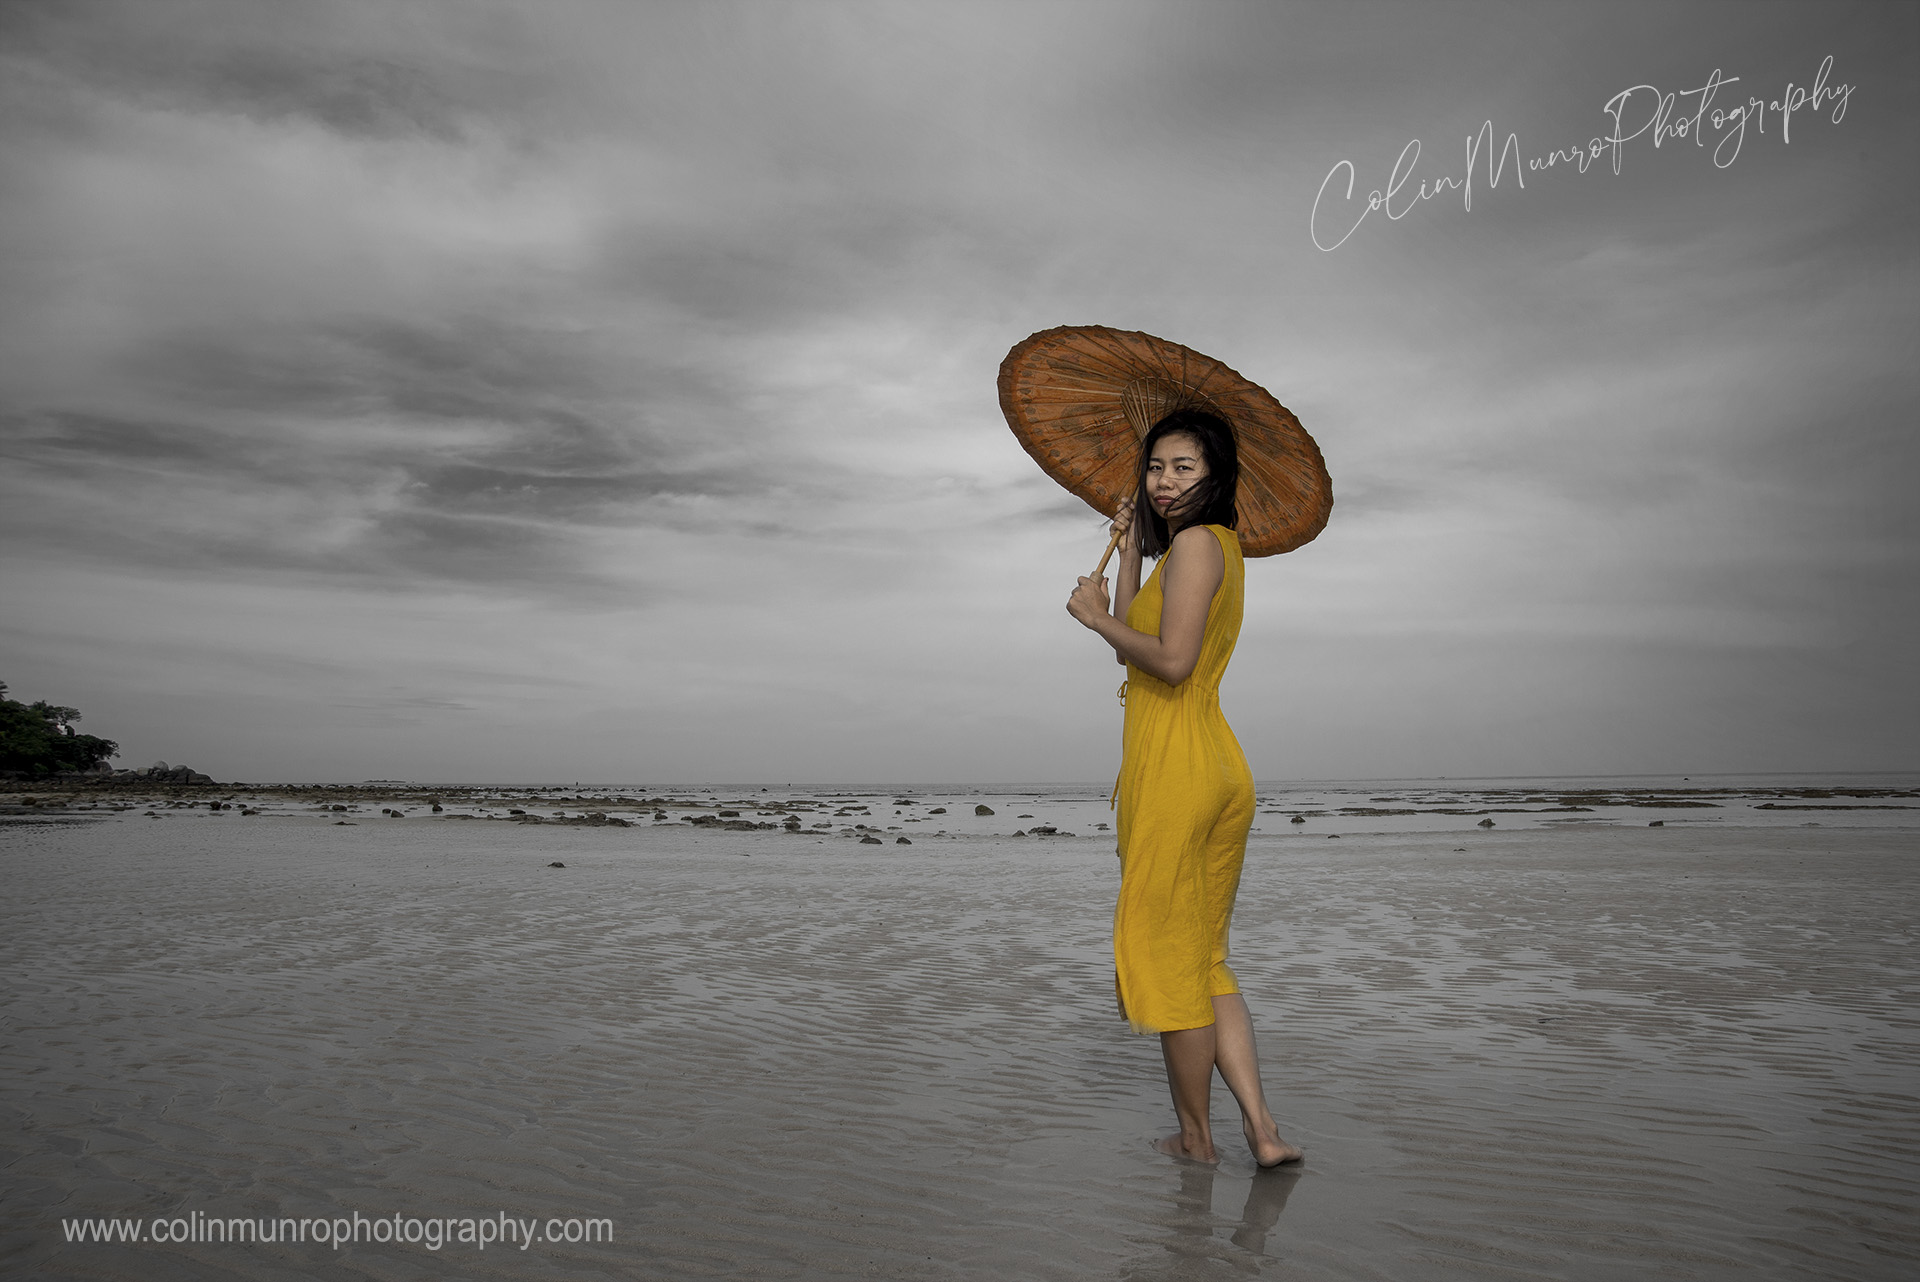 A Thai lady in a bright yellow dress walks along a beach in Thailand.